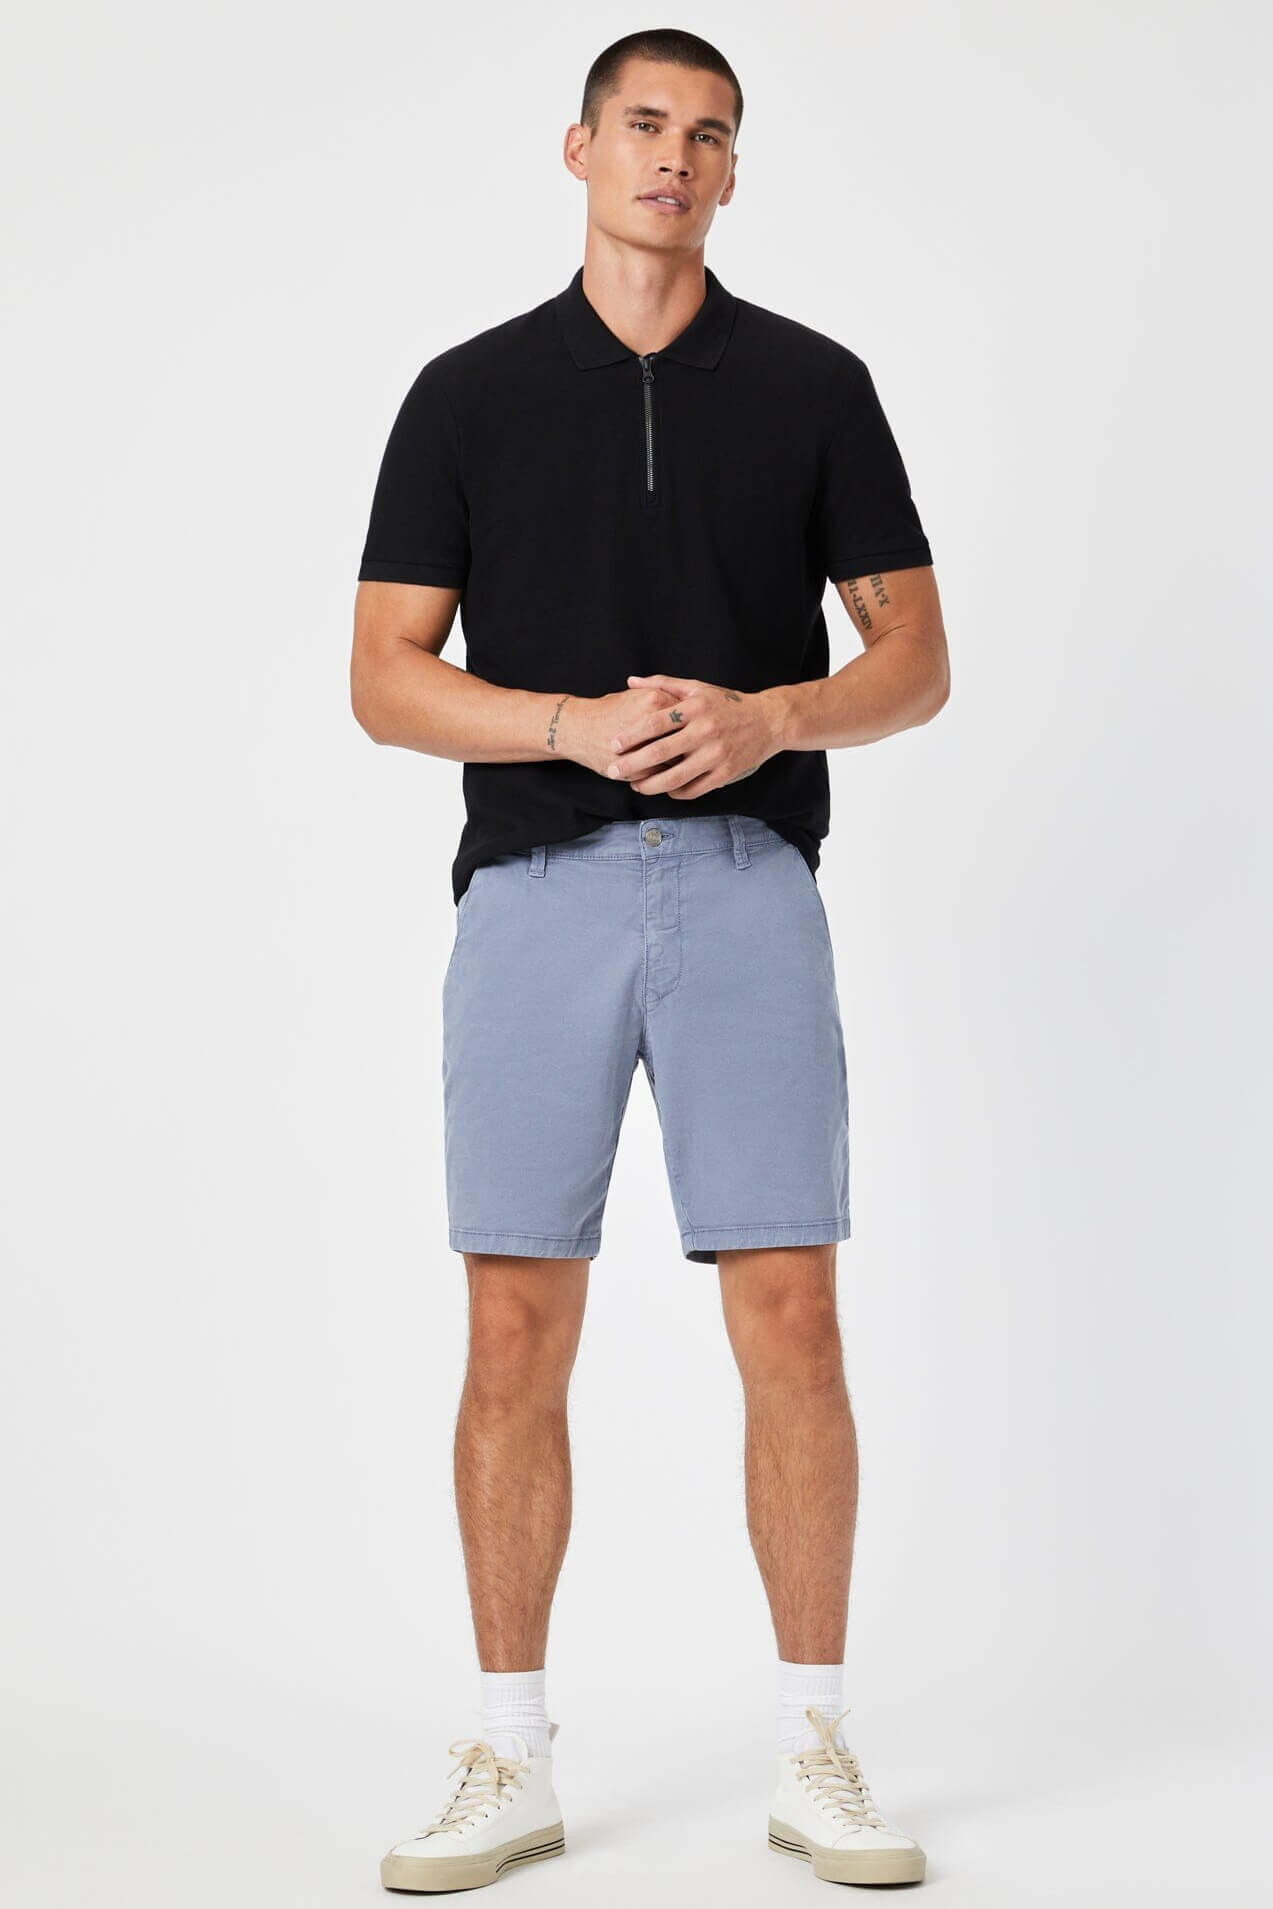 Mavi Jeans Noah 9" inseam shorts in flint stone luxe twill